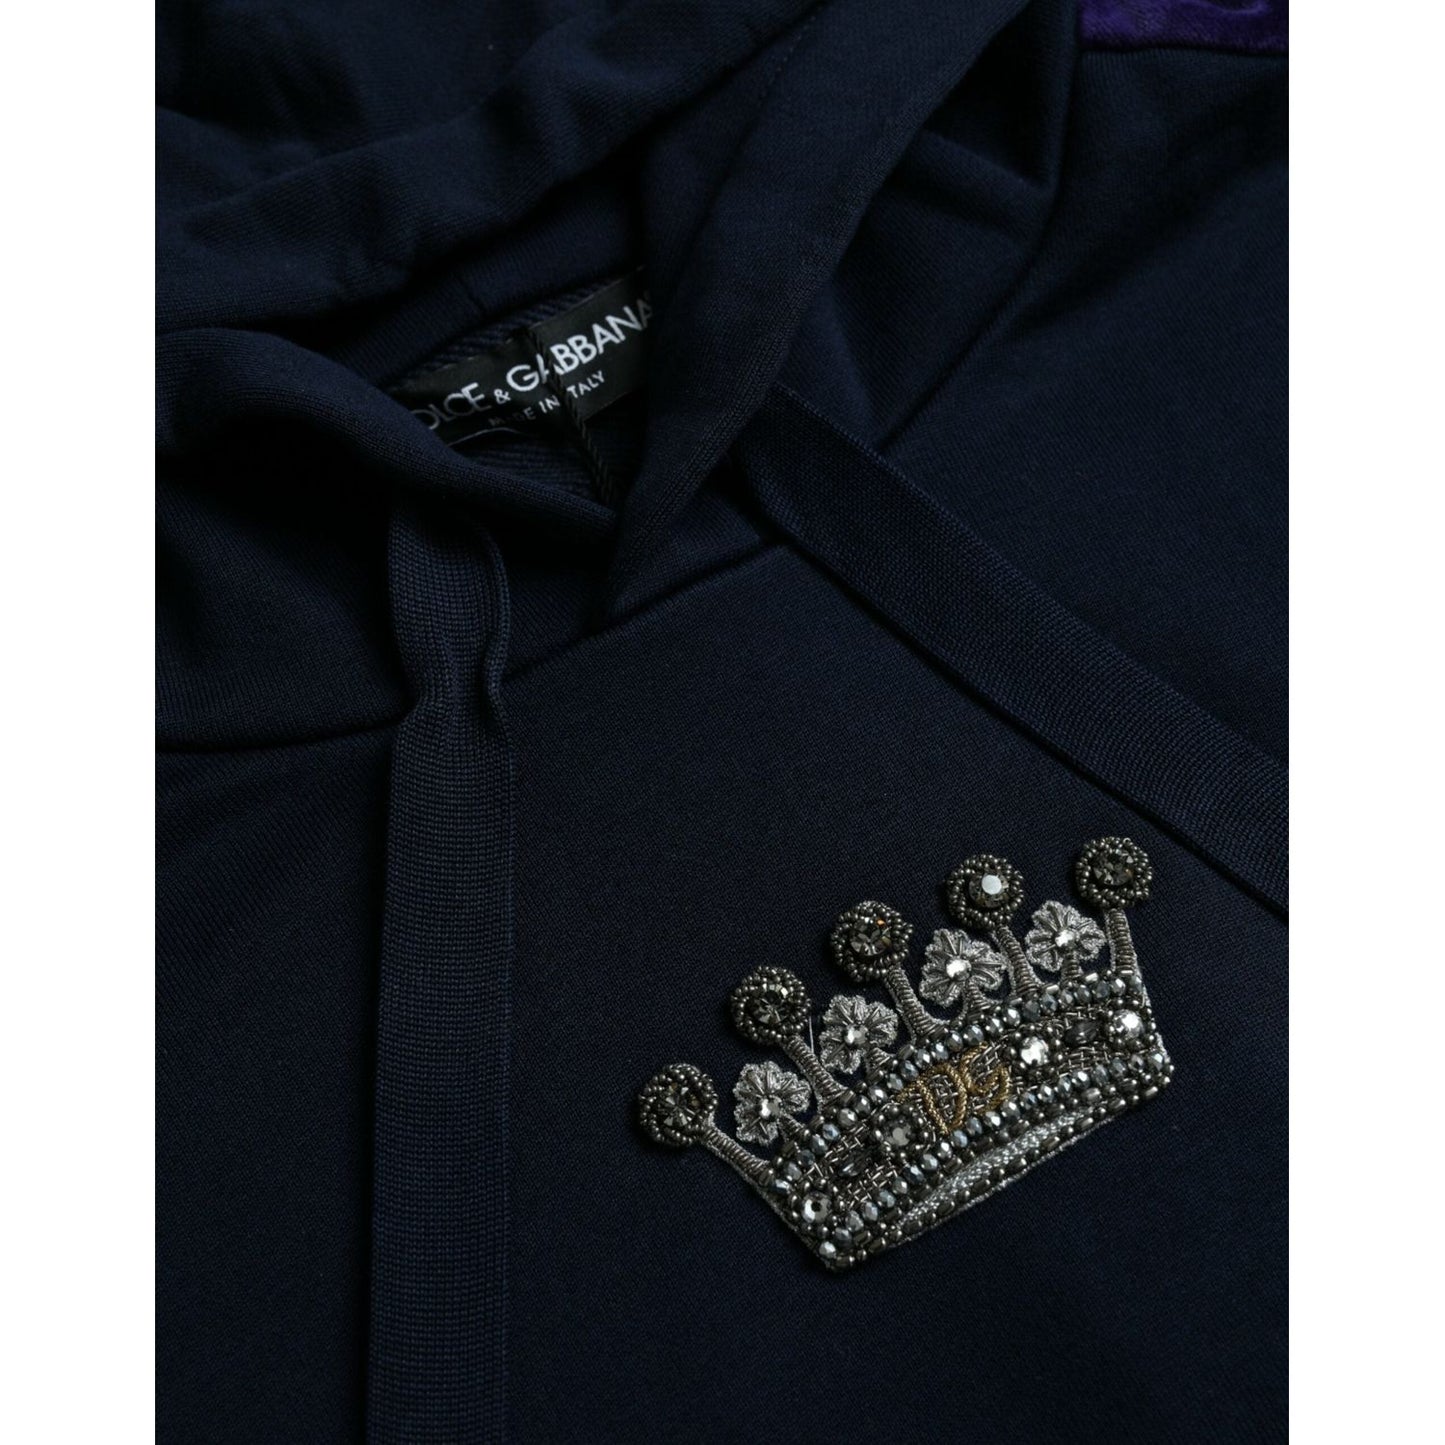 Dolce & Gabbana Dark Blue Cotton Crown Hooded Sweatshirt Sweater dark-blue-cotton-crown-hooded-sweatshirt-sweater